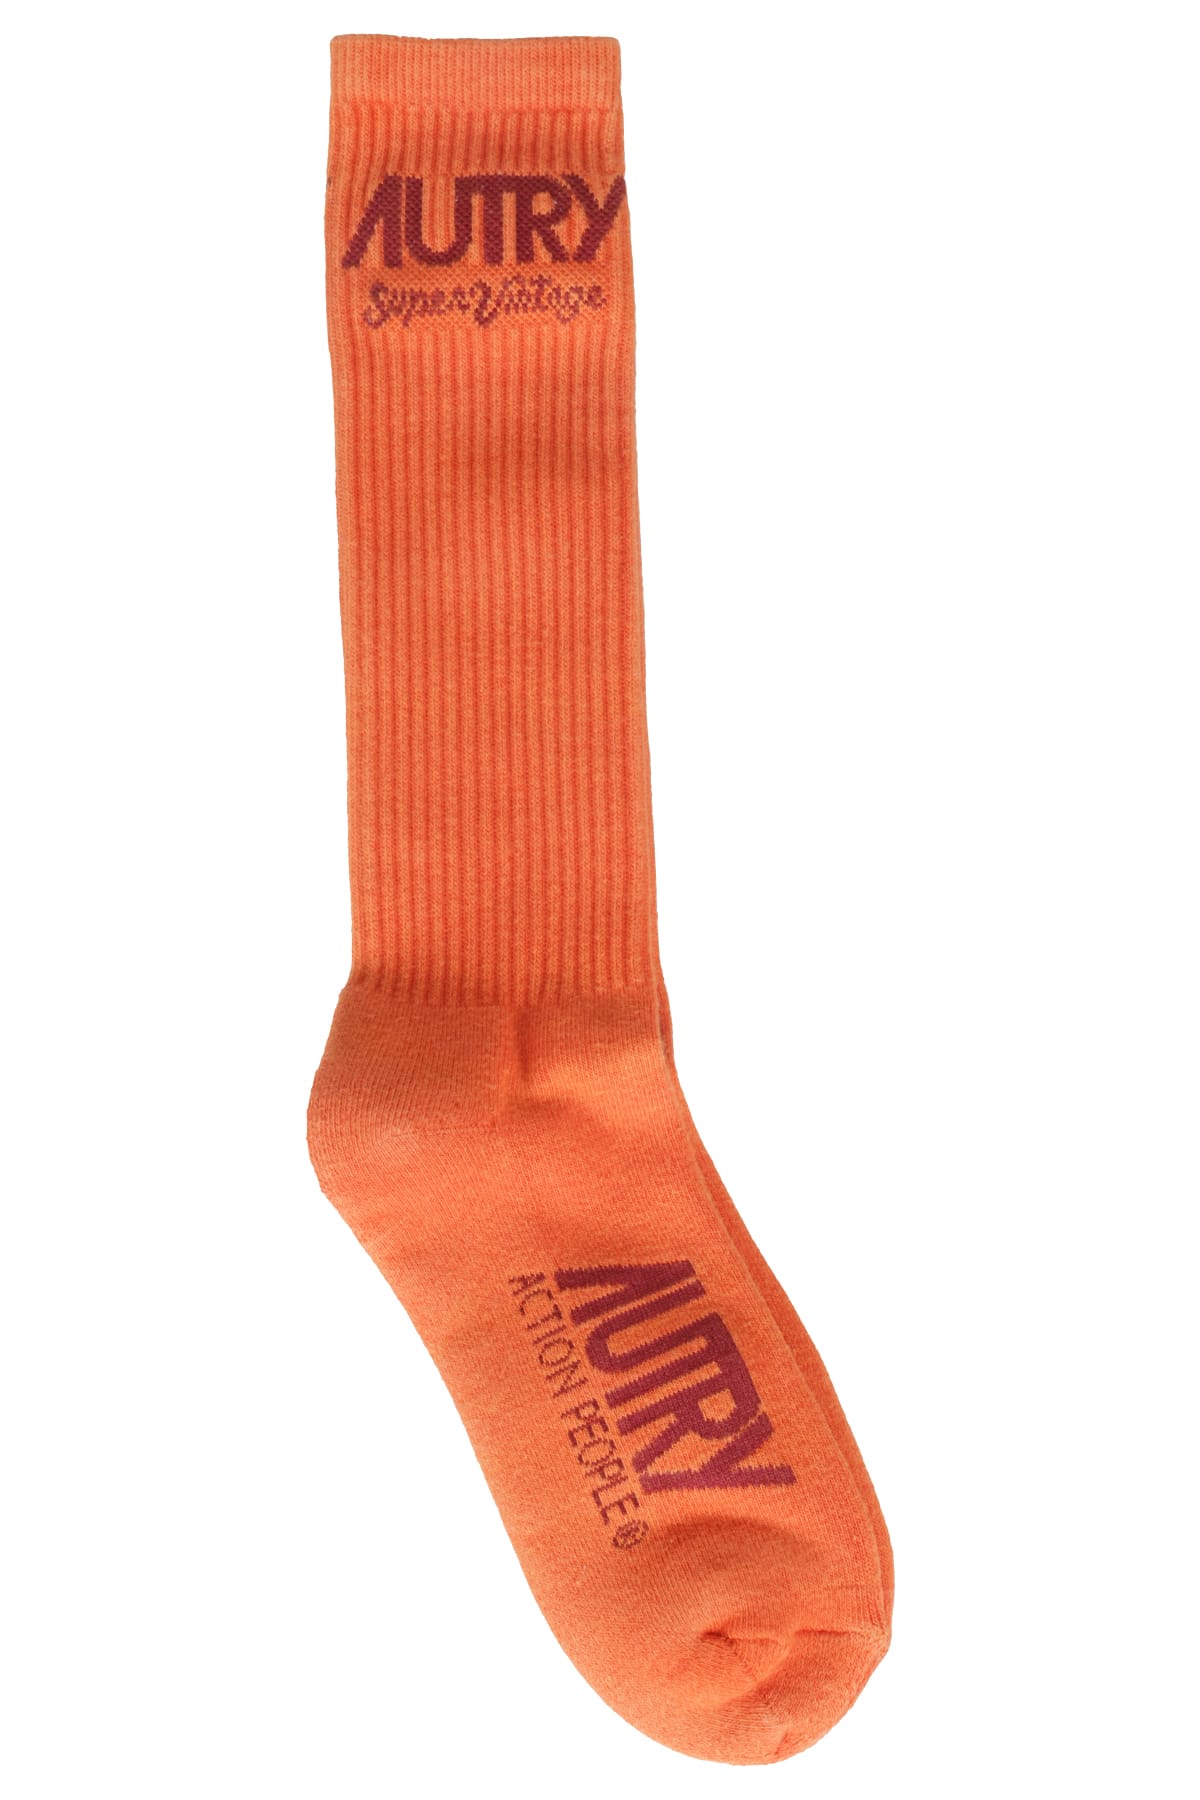 Shop Autry Socks Supervintage Unisex In Orange